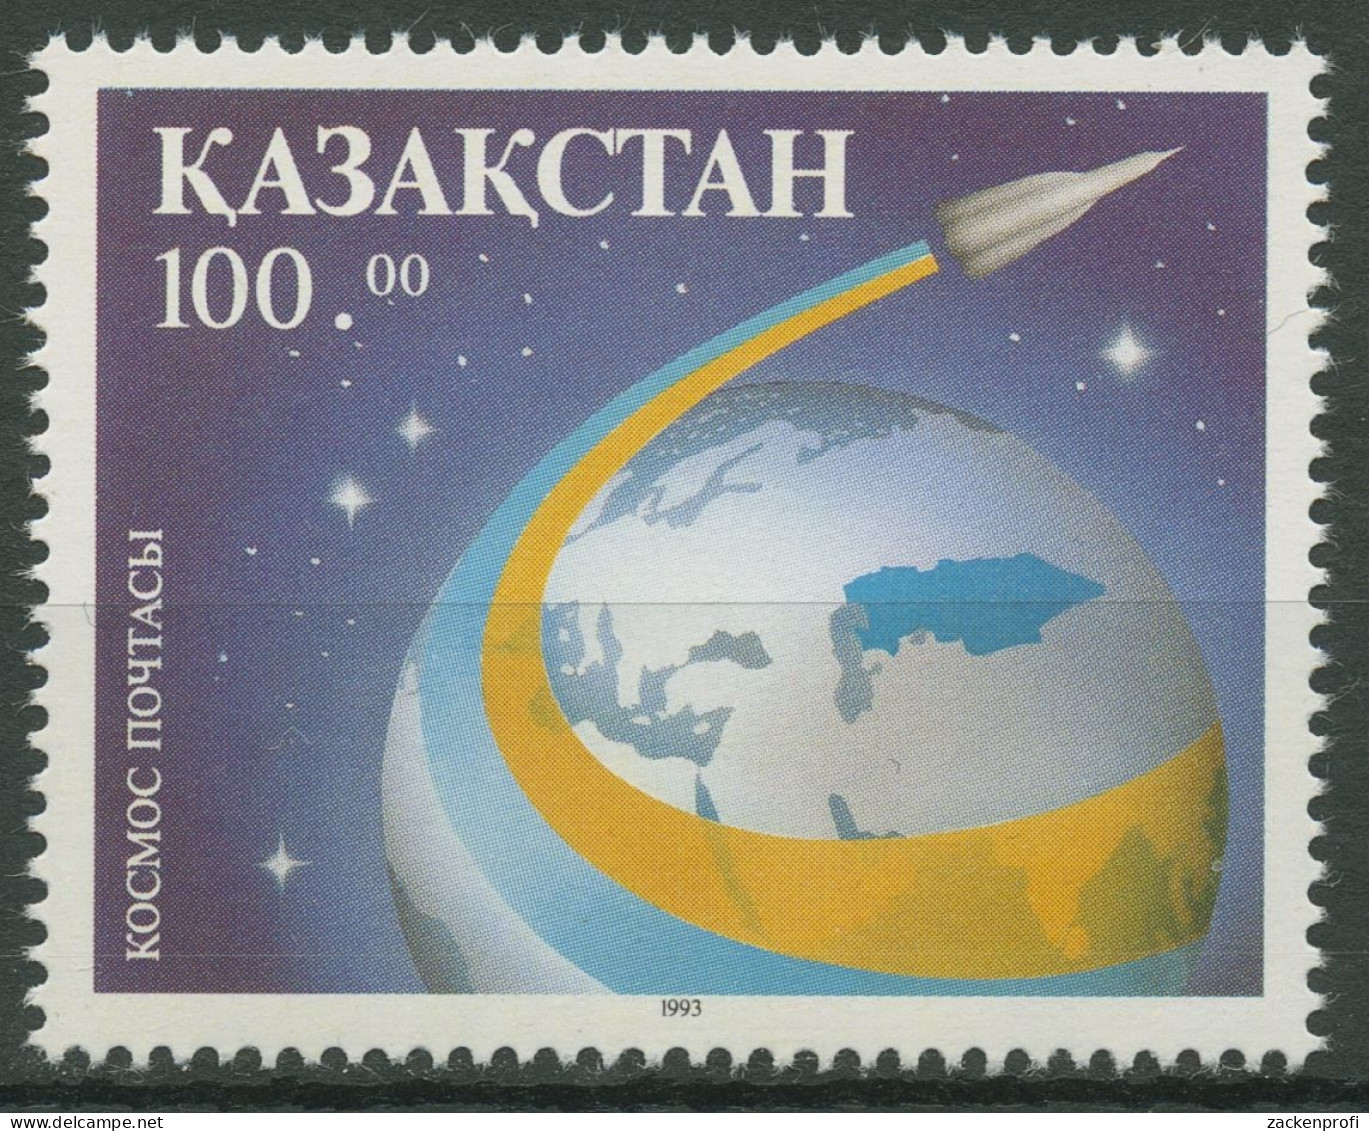 Kasachstan 1993 Kosmische Post Erdkugel 25 Postfrisch - Kazakhstan